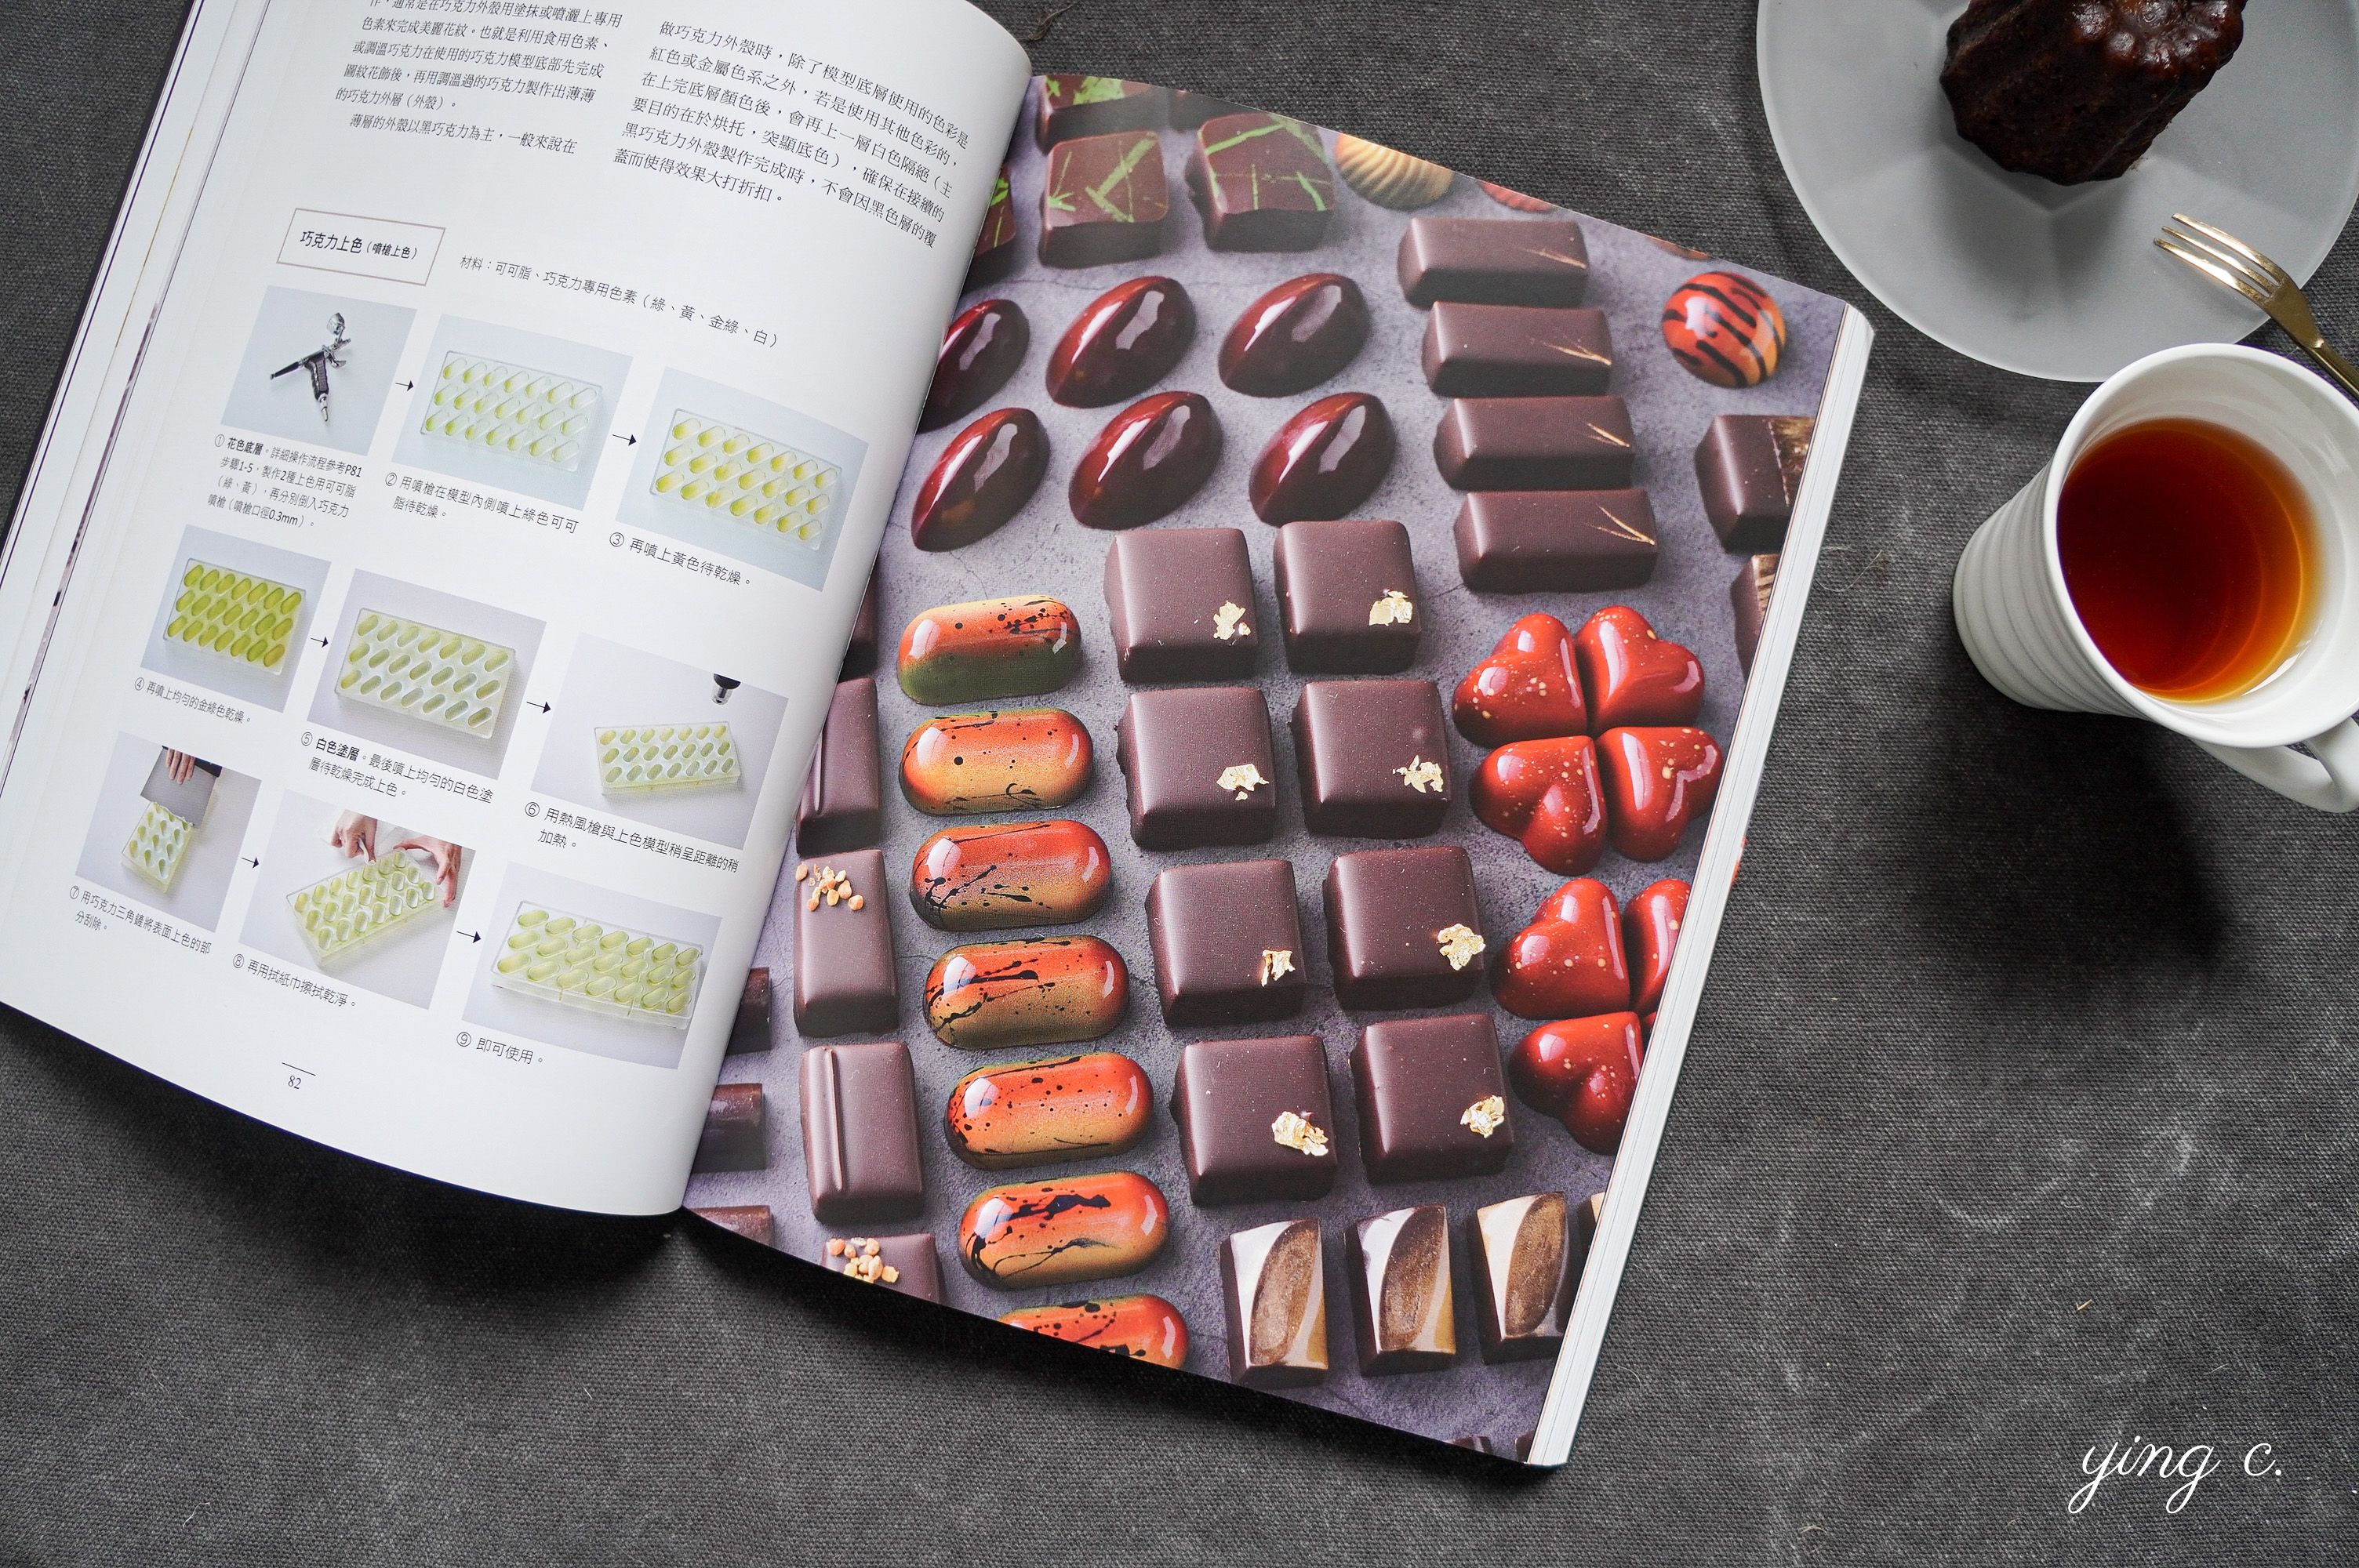 《職人精品巧克力全書》中除了可可與巧克力的知識，也有一半的篇幅在詳述製作巧克力的訣竅和食譜分享。